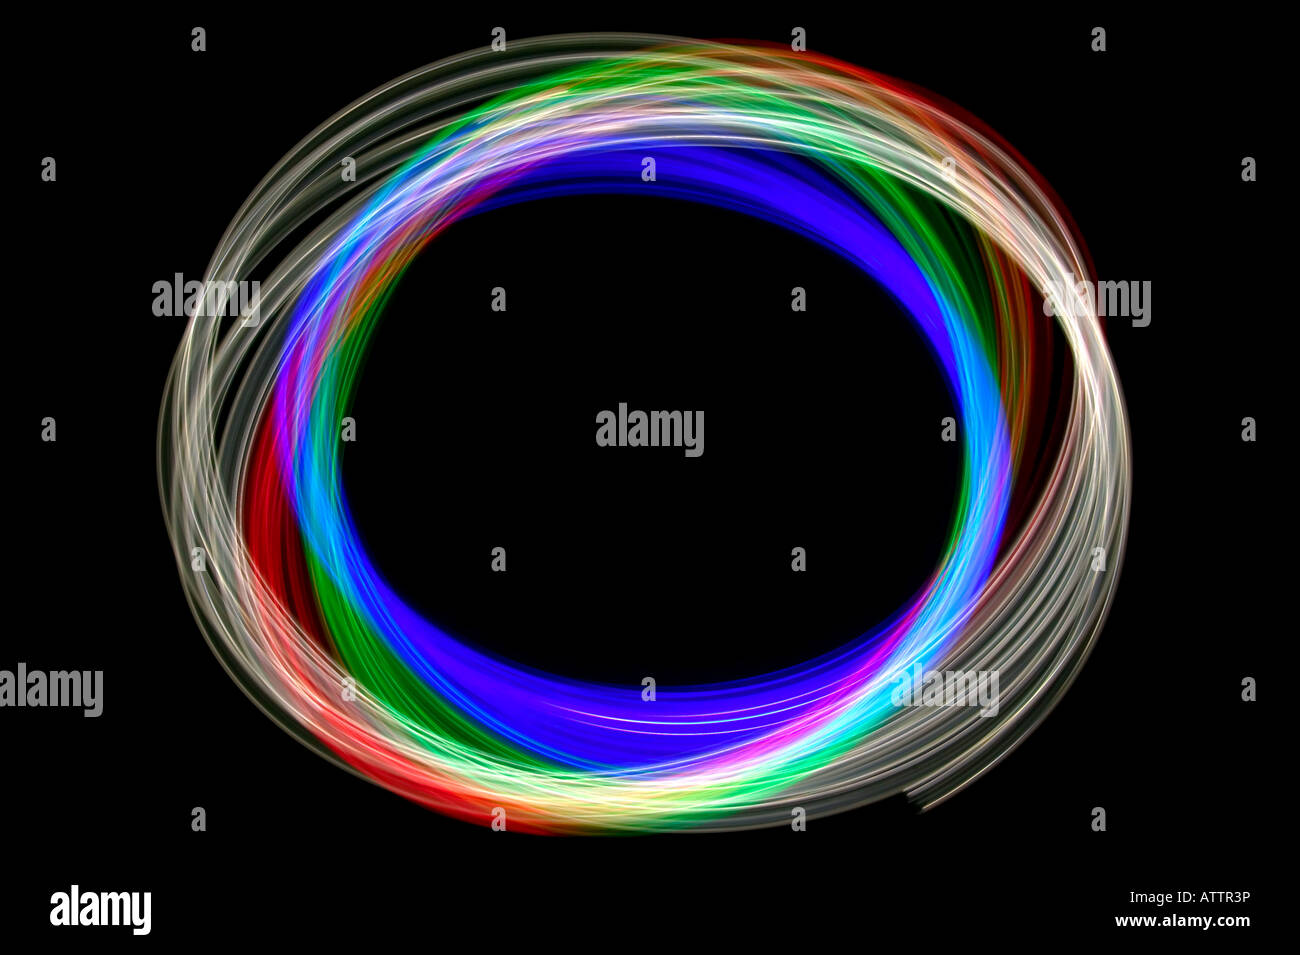 Abstract light image physiogram en utilisant trois différents filtres de couleur Banque D'Images